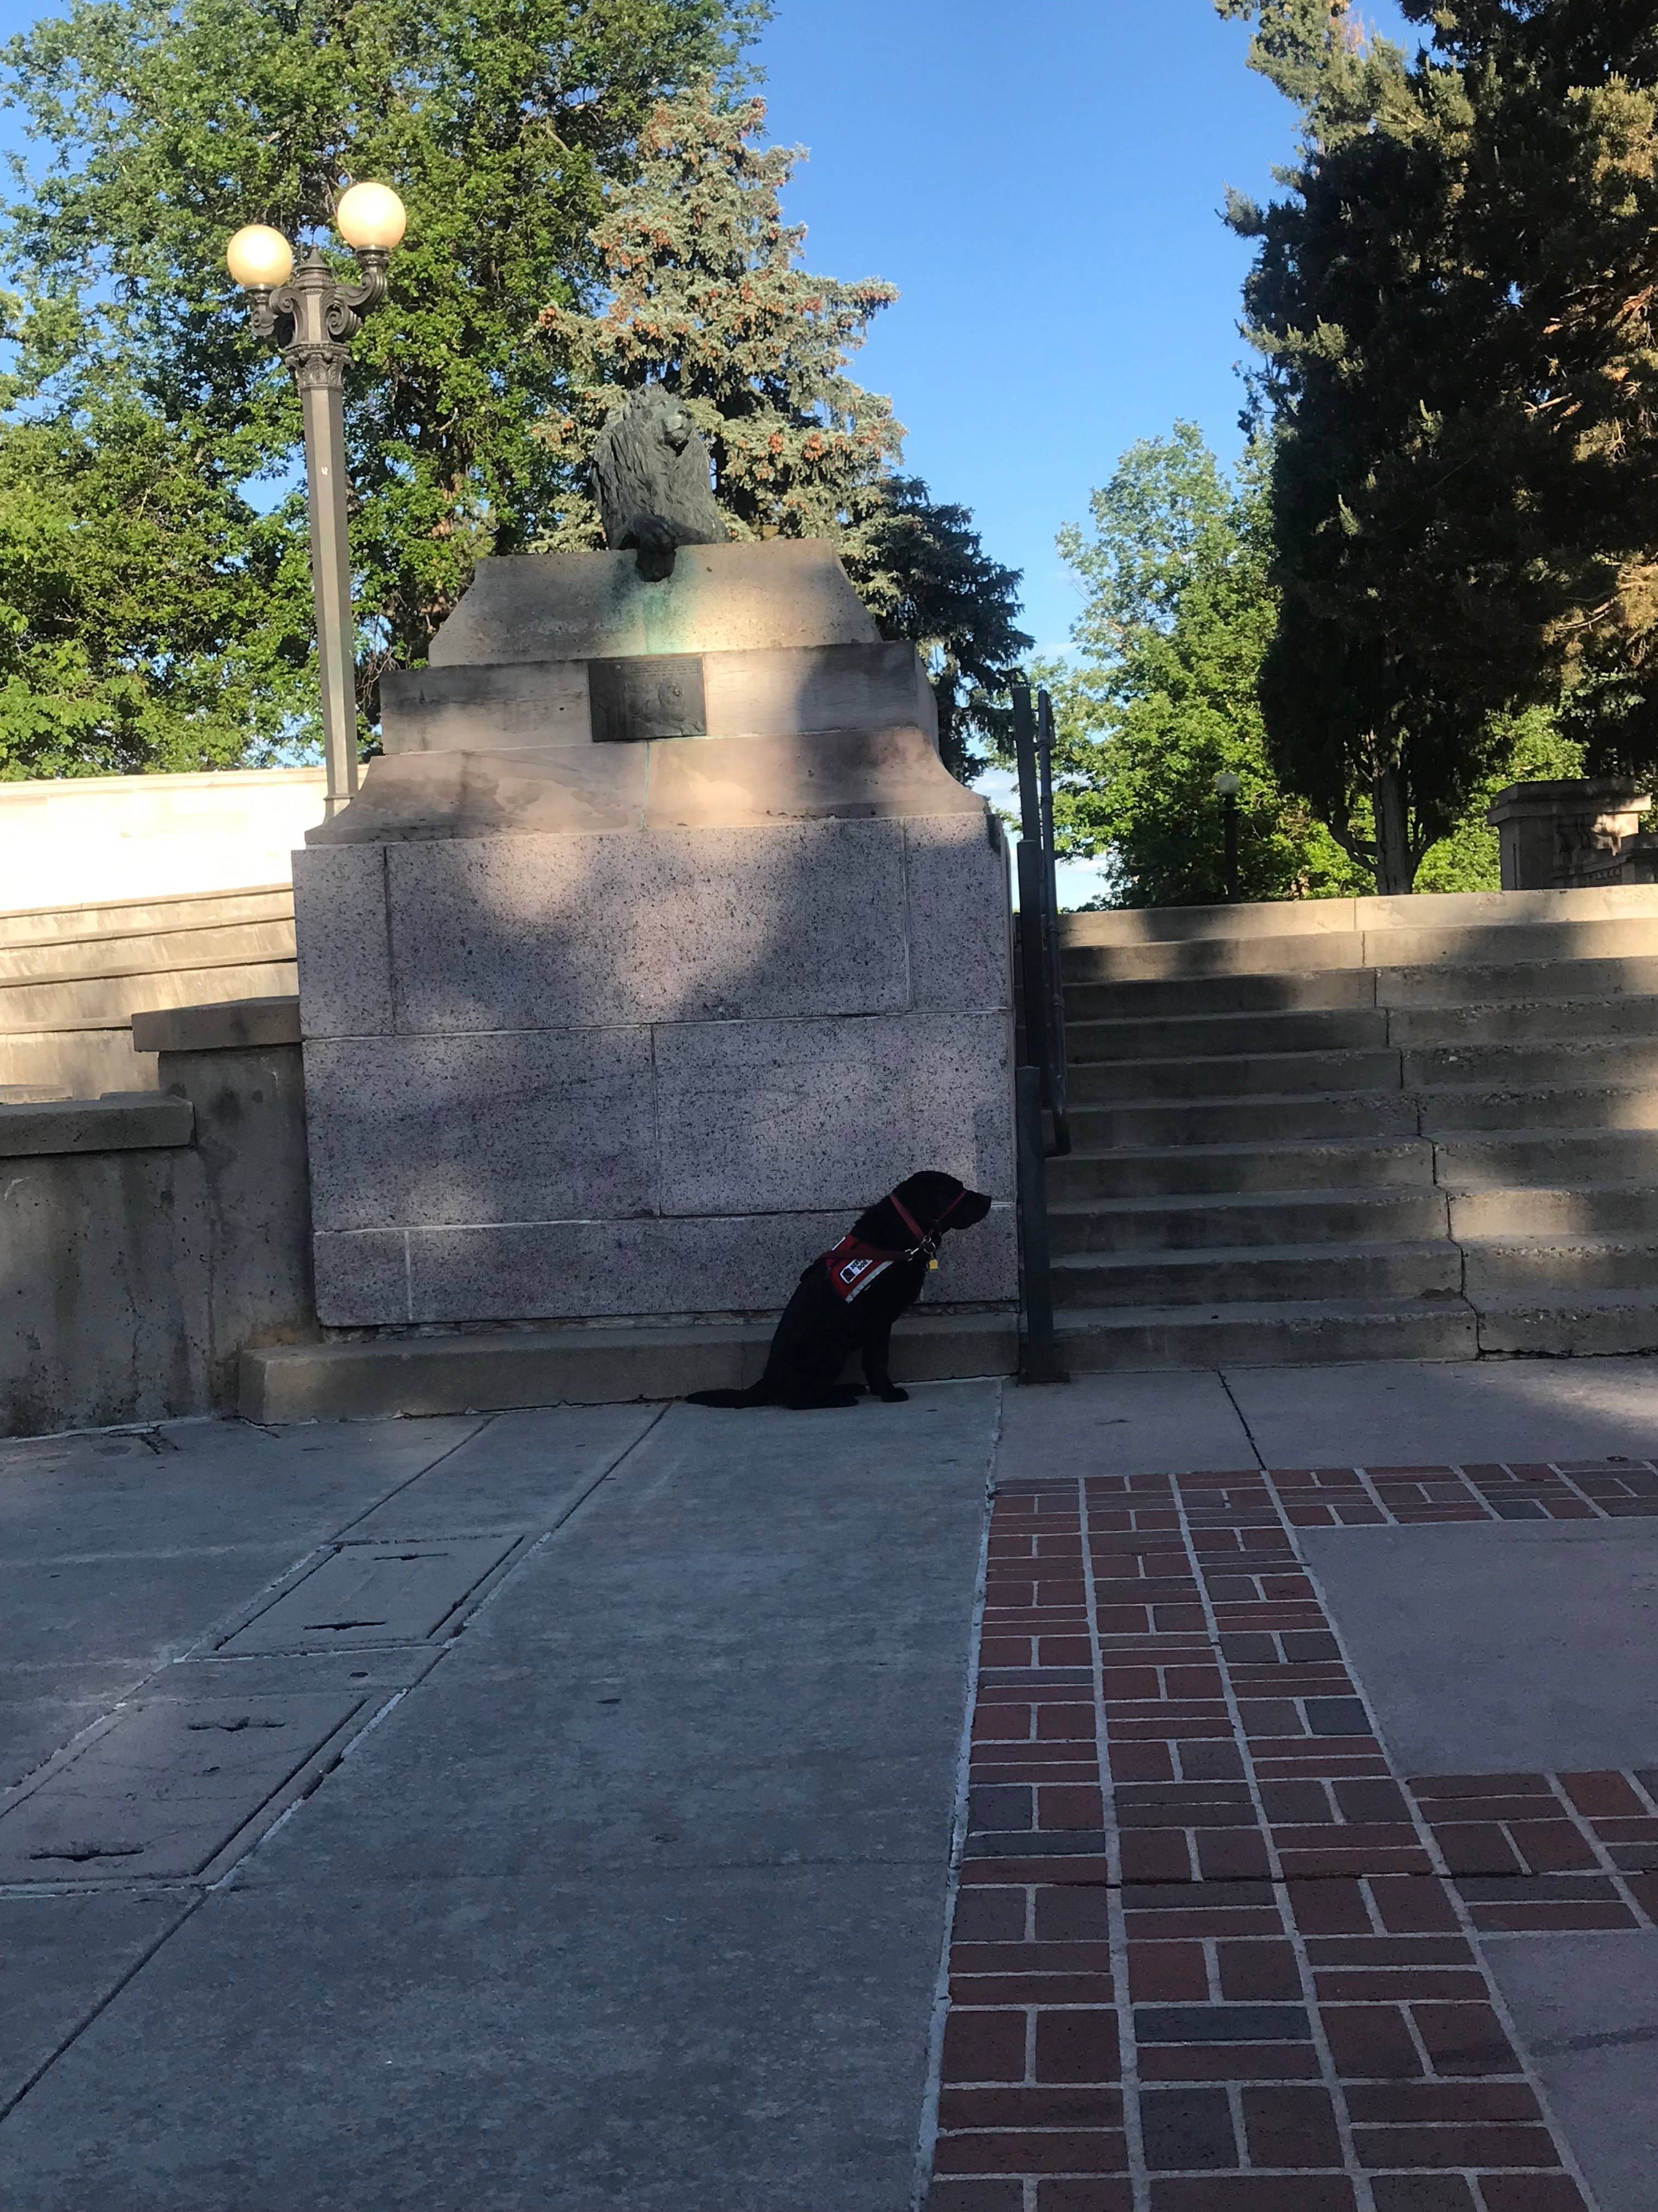 Saint and a Lion in Civic Center Park, Denver--6.6.2019